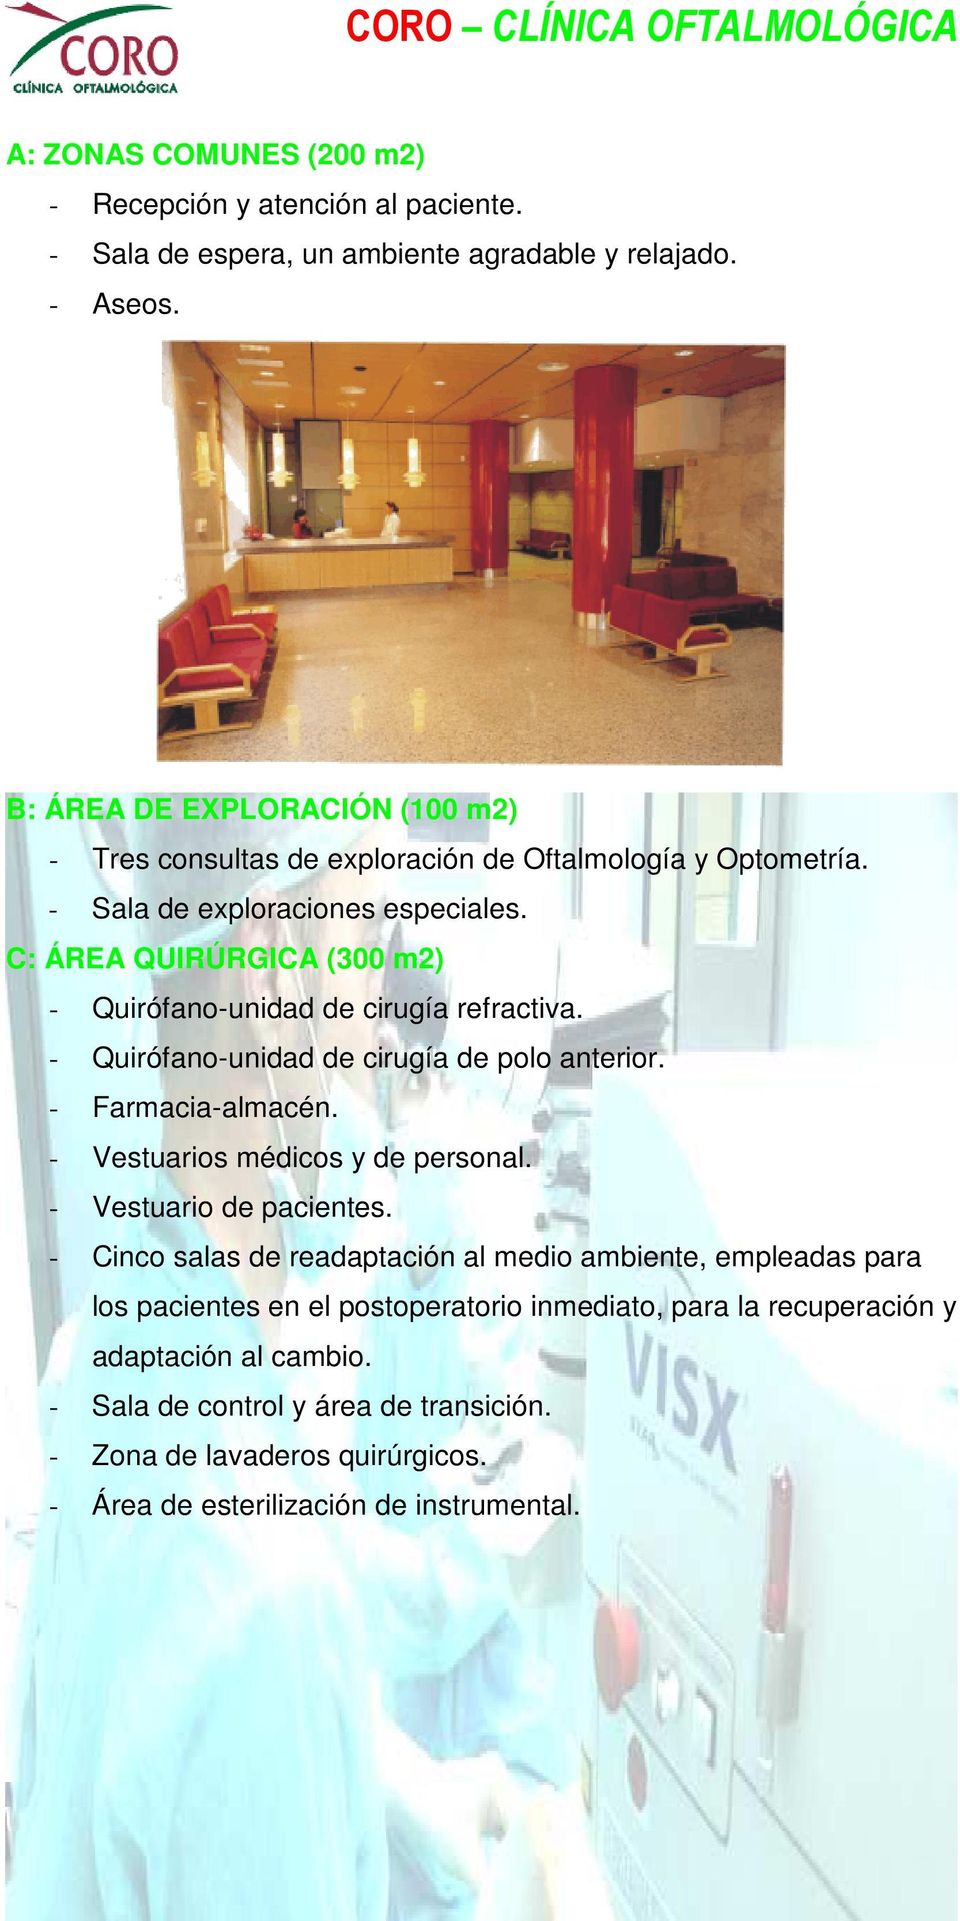 C: ÁREA QUIRÚRGICA (300 m2) - Quirófano-unidad de cirugía refractiva. - Quirófano-unidad de cirugía de polo anterior. - Farmacia-almacén. - Vestuarios médicos y de personal.